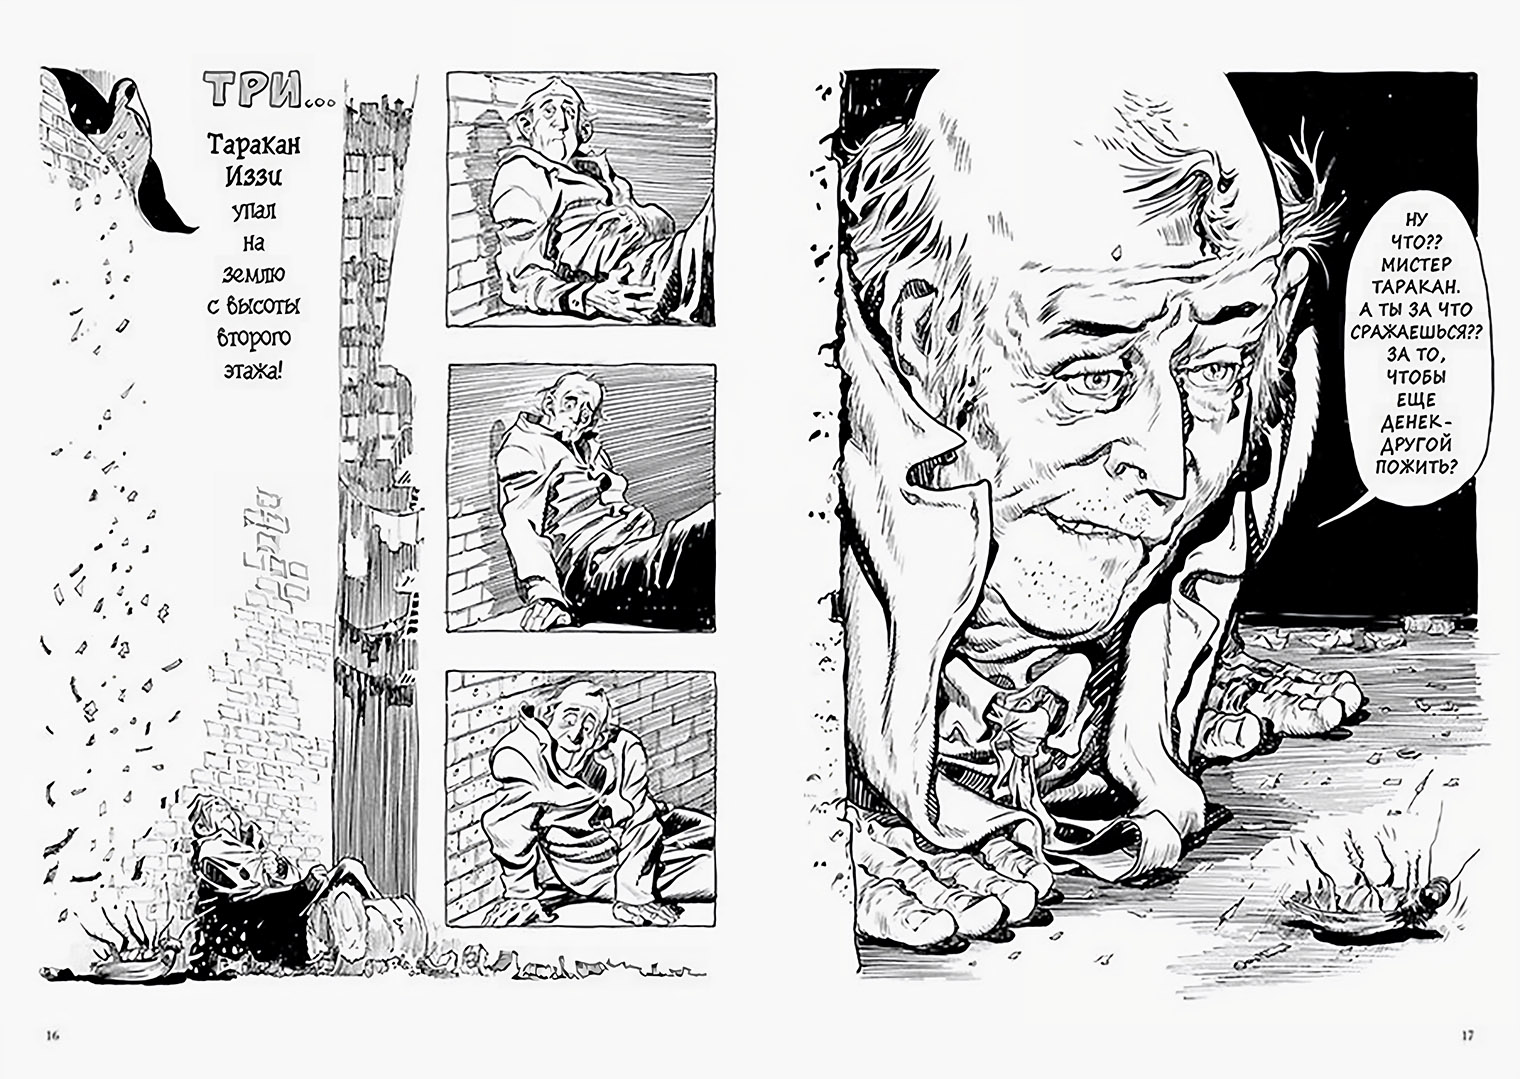 Уильям Айснер — один из самых влиятельных комиксистов. Его именем названа главная премия в индустрии. Источник: МИФ